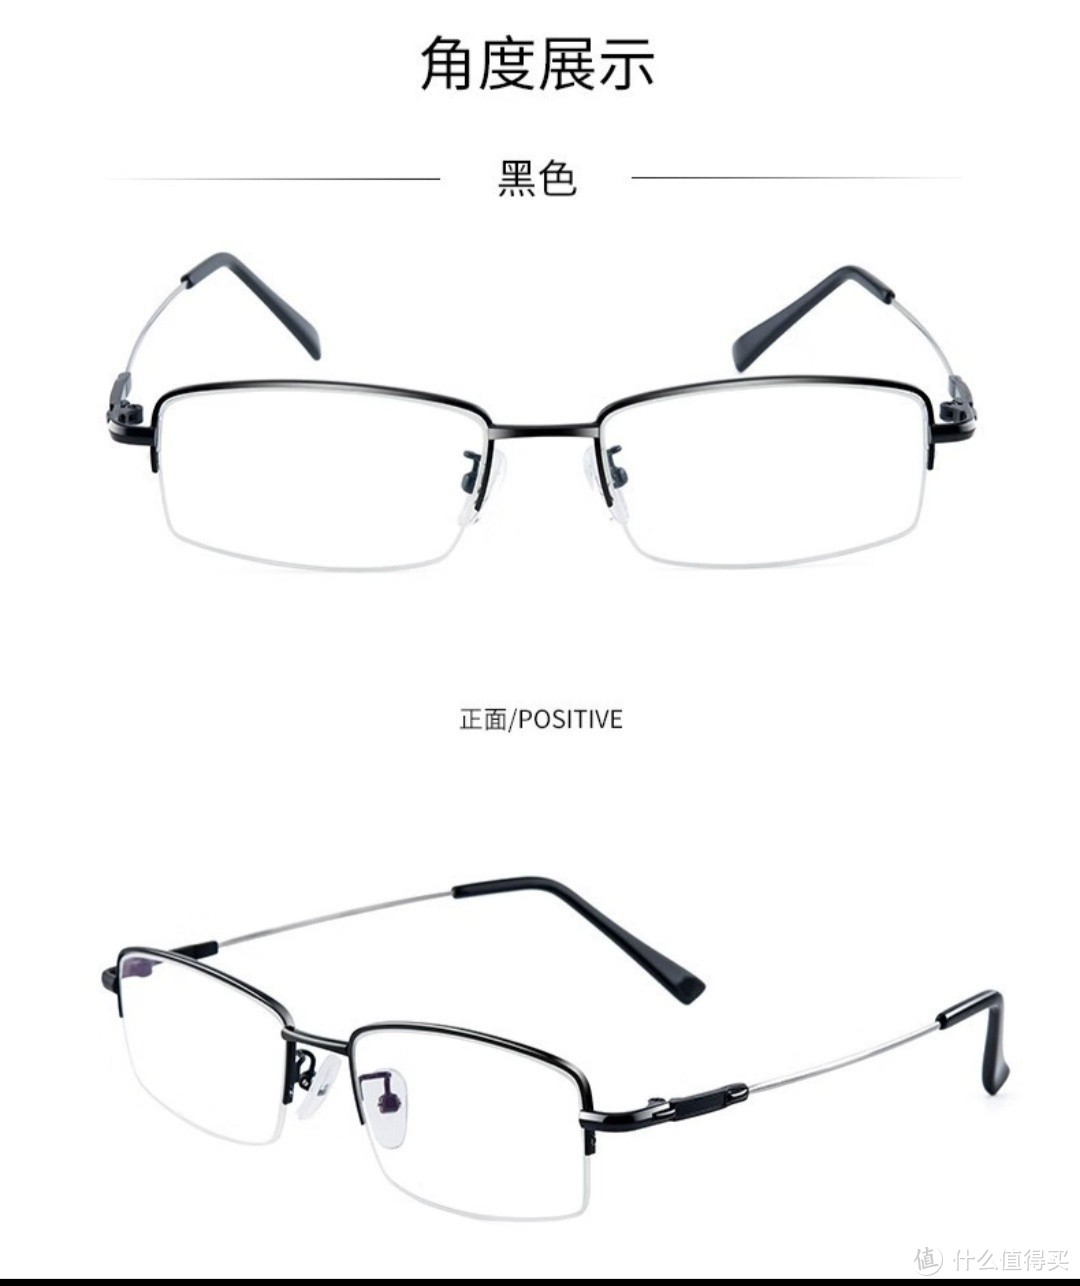 京东眼镜打造个性定制，让你的眼镜与众不同!